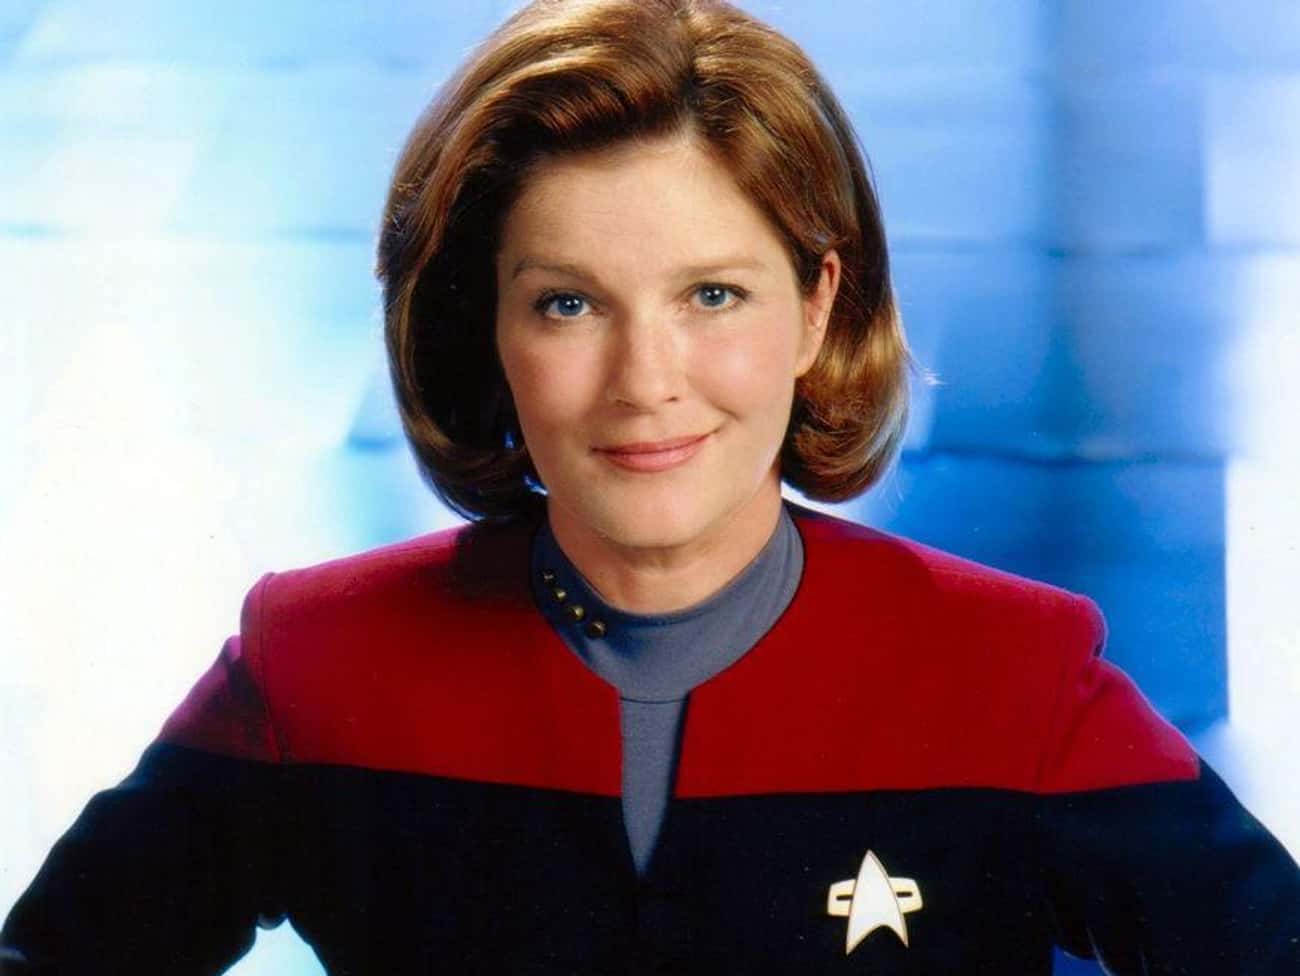 Taurus (April 20 - May 20): Captain Janeway